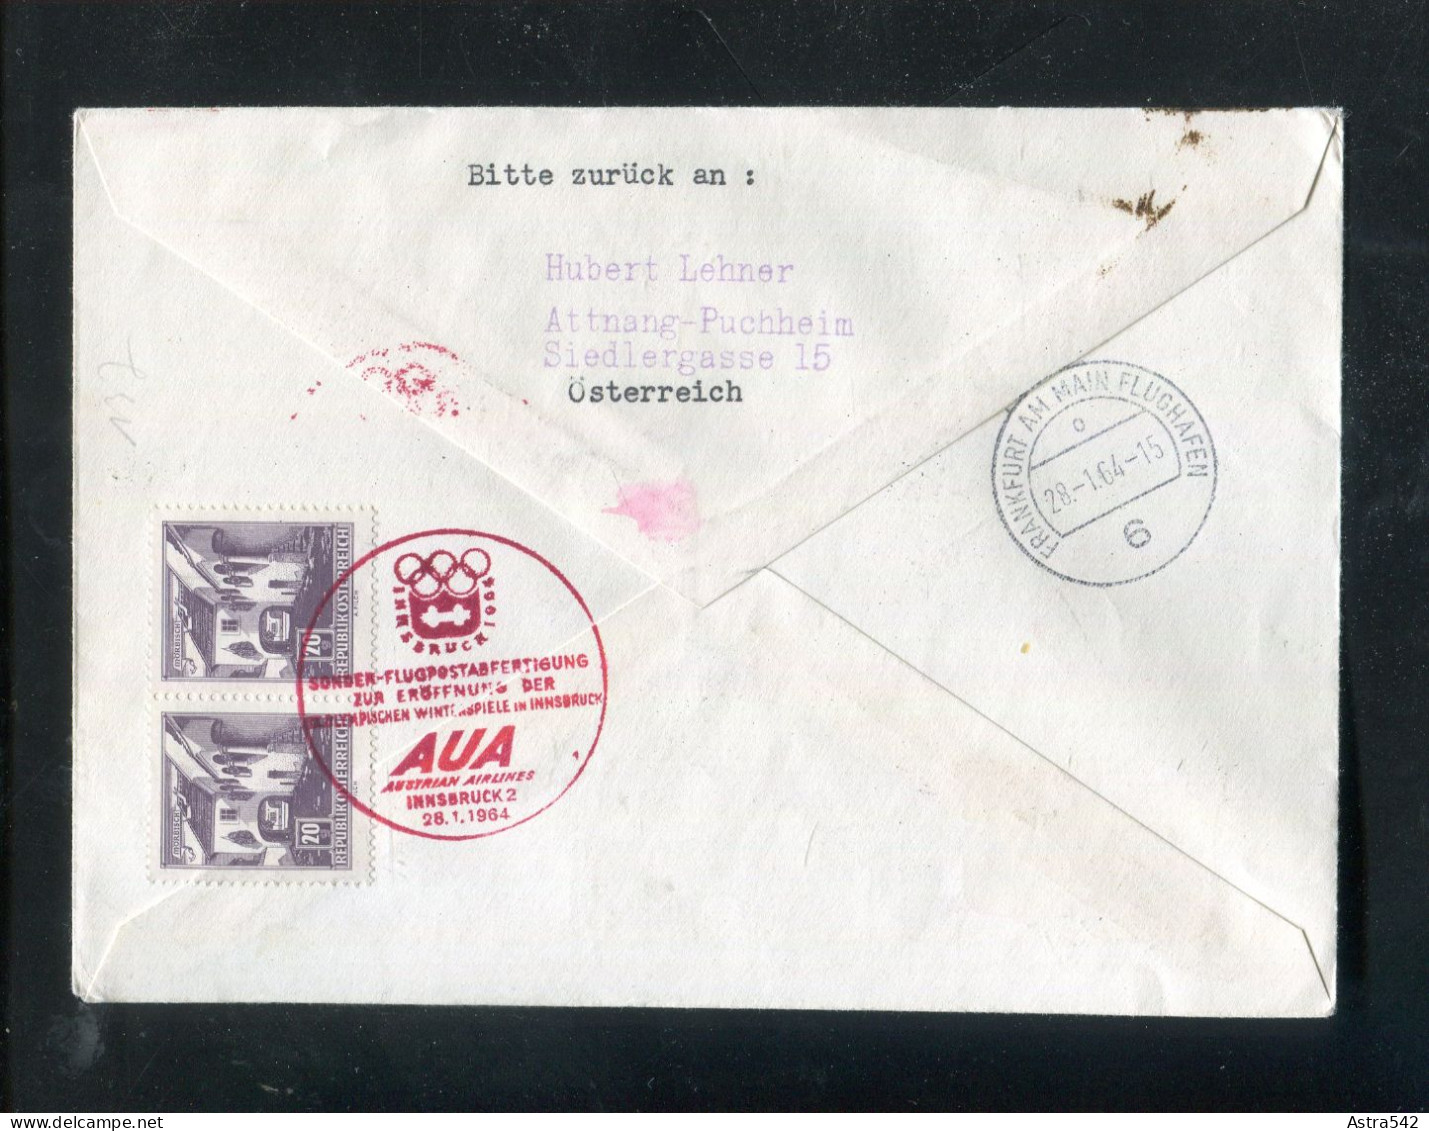 "OESTERREICH" 1964, AUA-Olympiade-Sonderflugbrief "Innsbruck-Frankfurt" (A0025) - Primi Voli